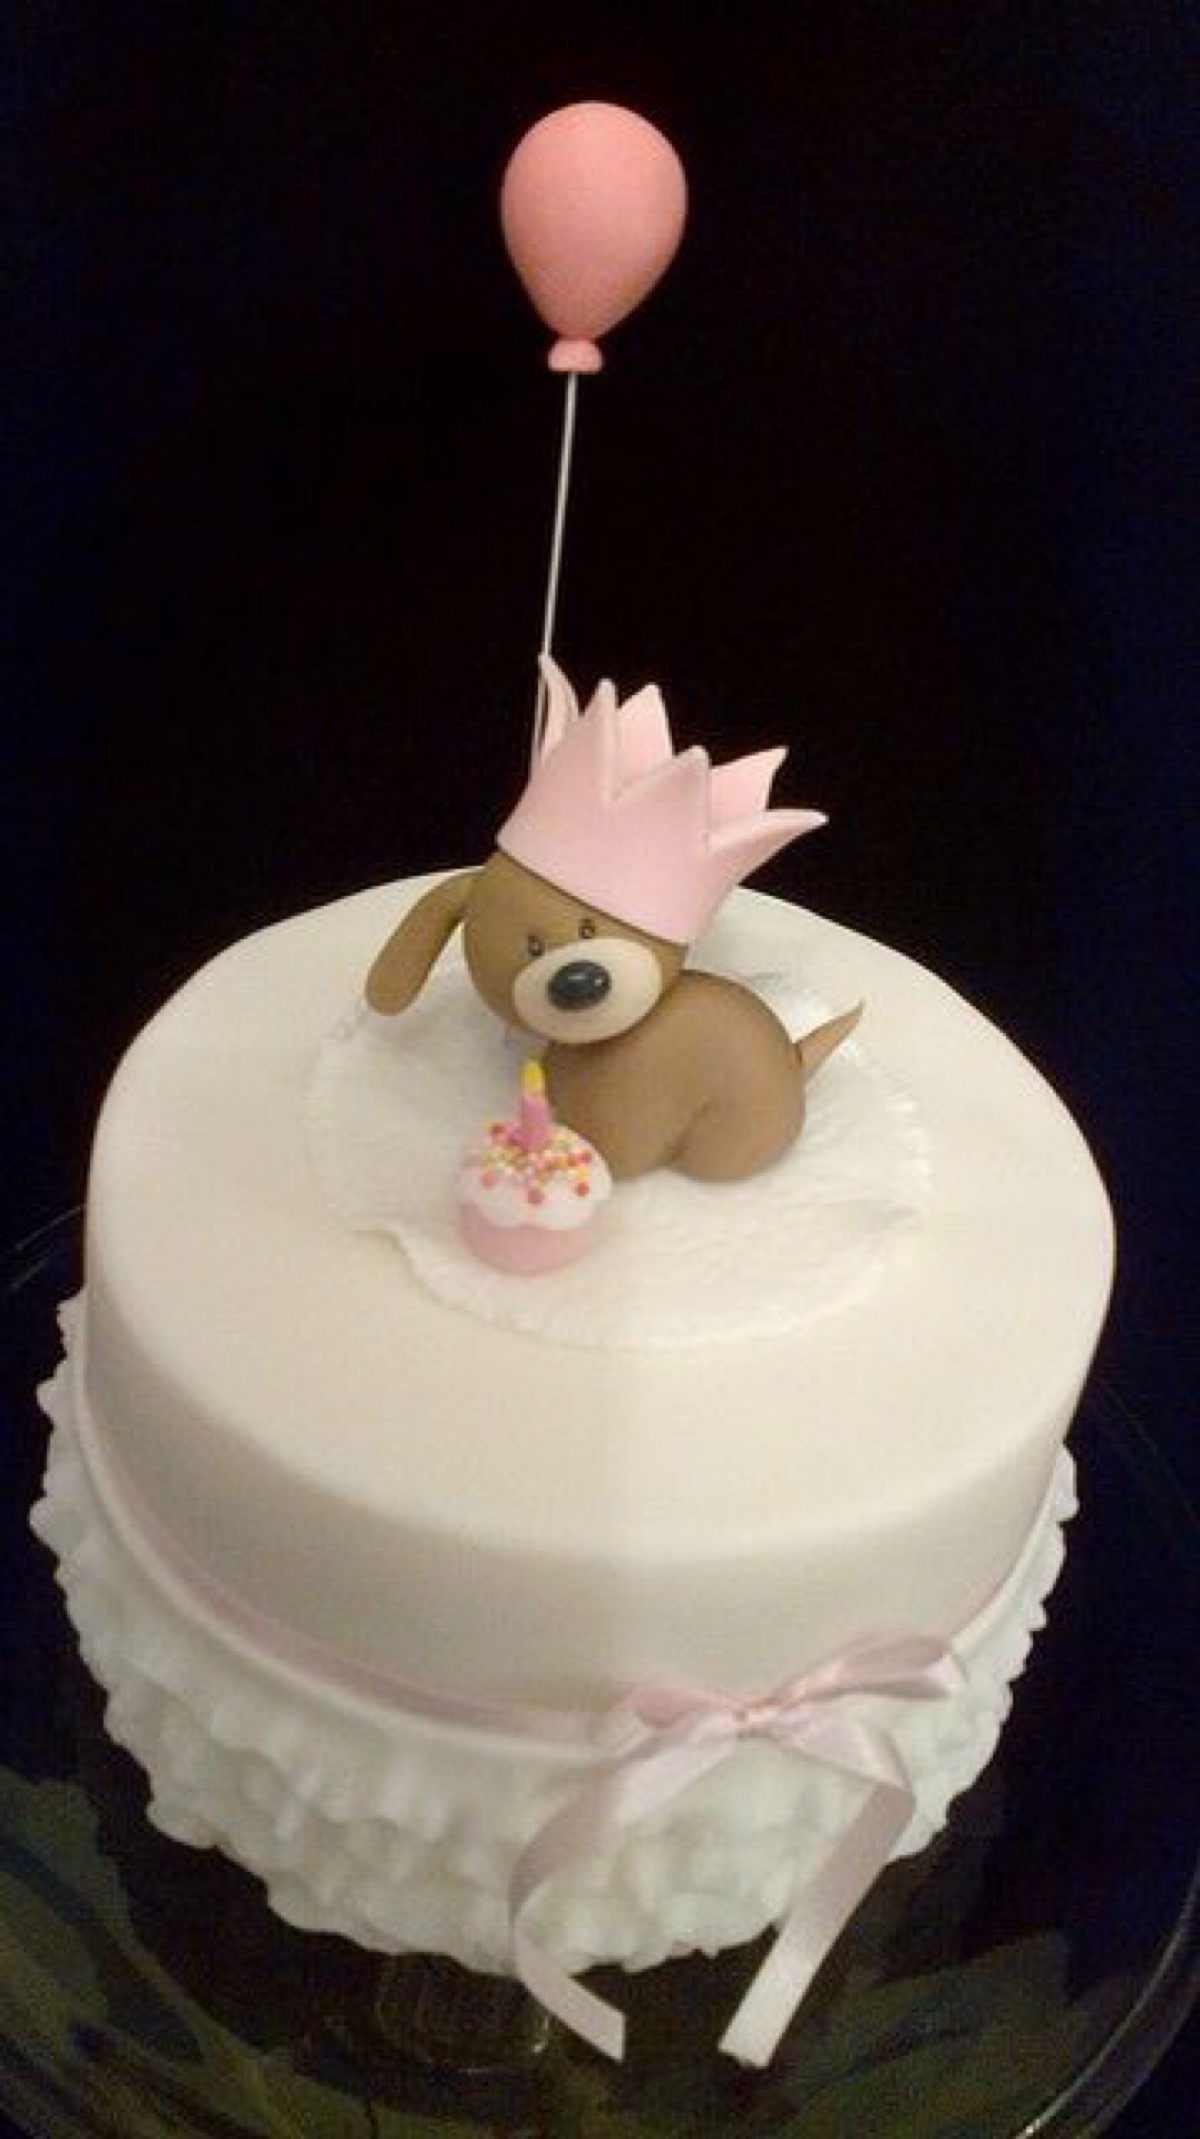 简单的翻糖蛋糕 可爱的狗狗 也在过生日哦 画中画